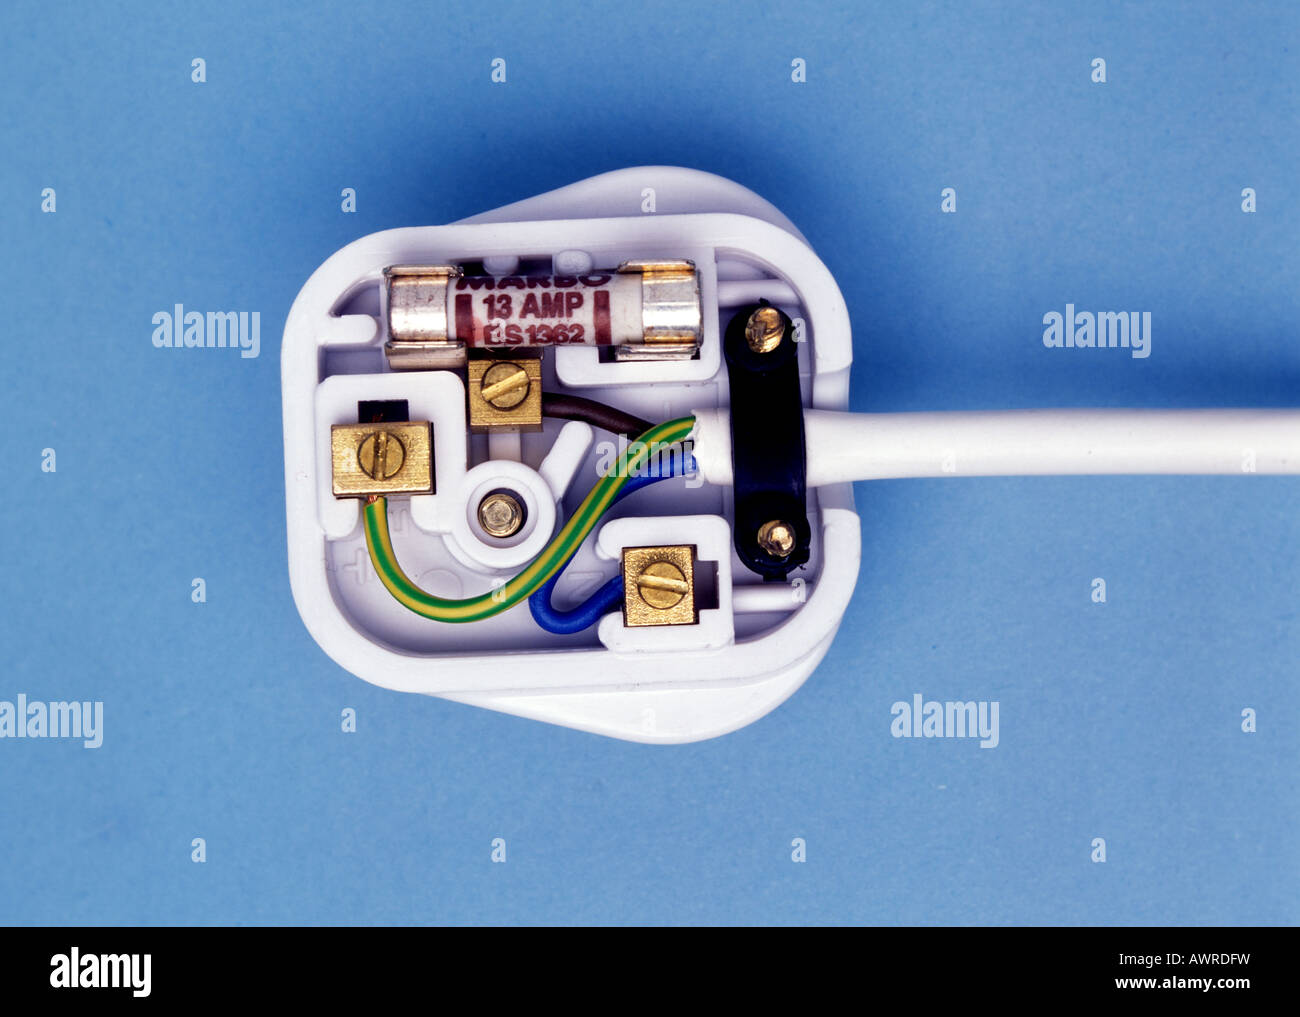 Wiring of 13 amp plug UK style Stock Photo: 16641036 - Alamy